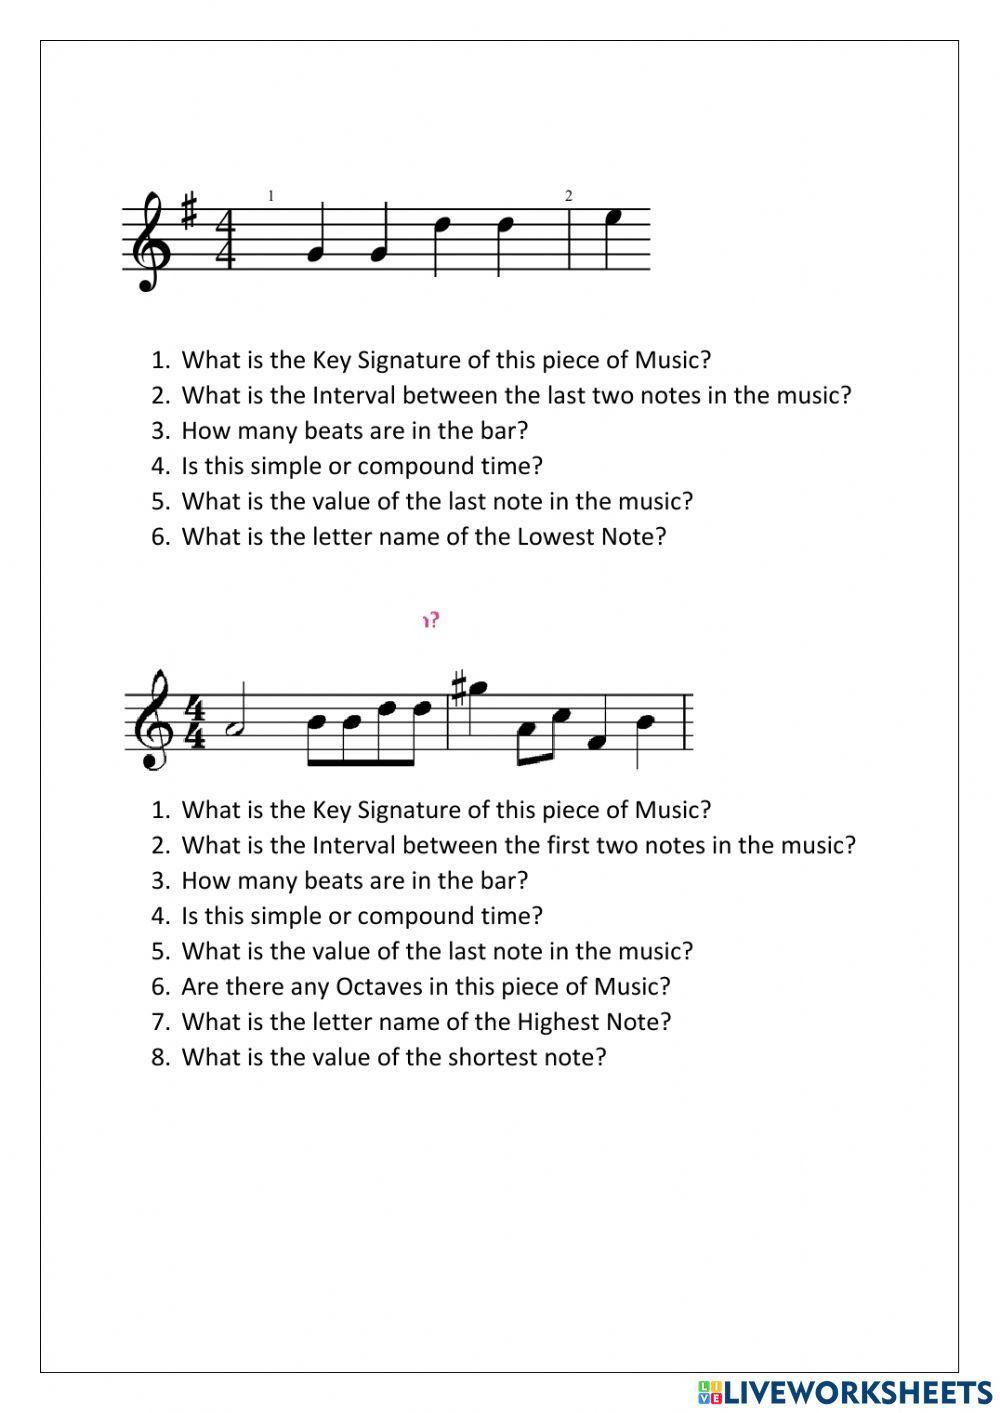 N5 Music Literacy Practice